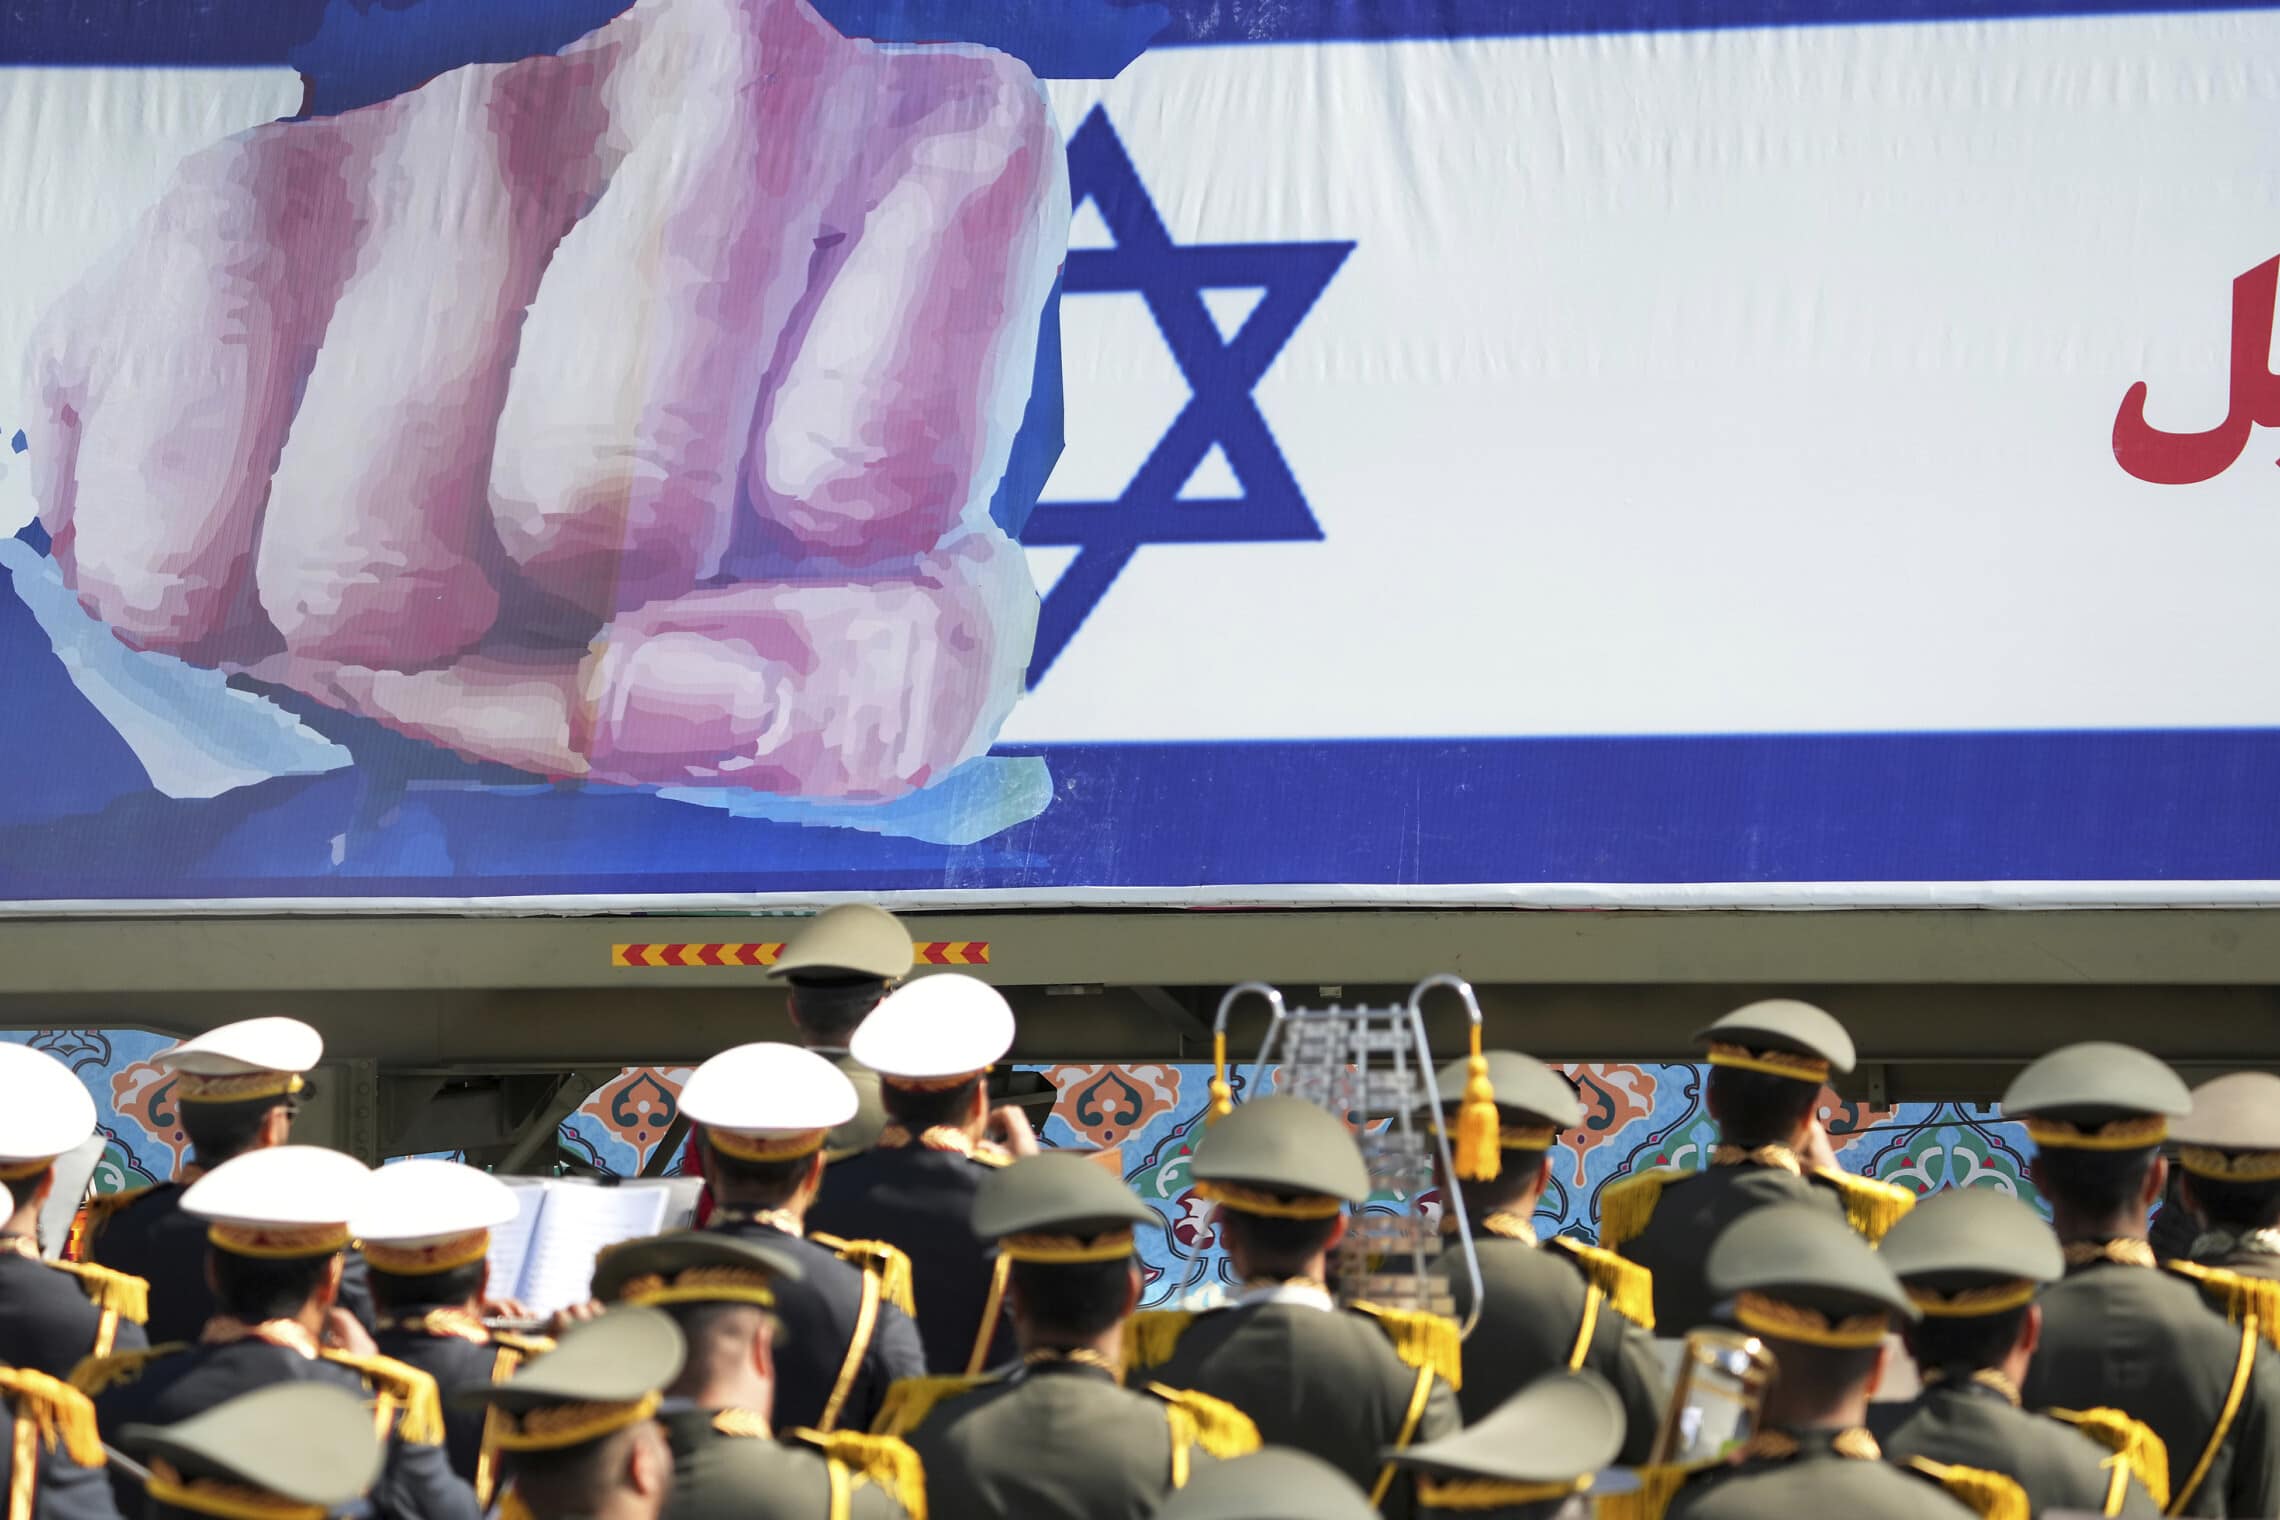 כרזה אנטי־ישראלית מוצגת במהלך יום הצבא האיראני, 18 באפריל 2023 (צילום: AP Photo/Vahid Salemi)